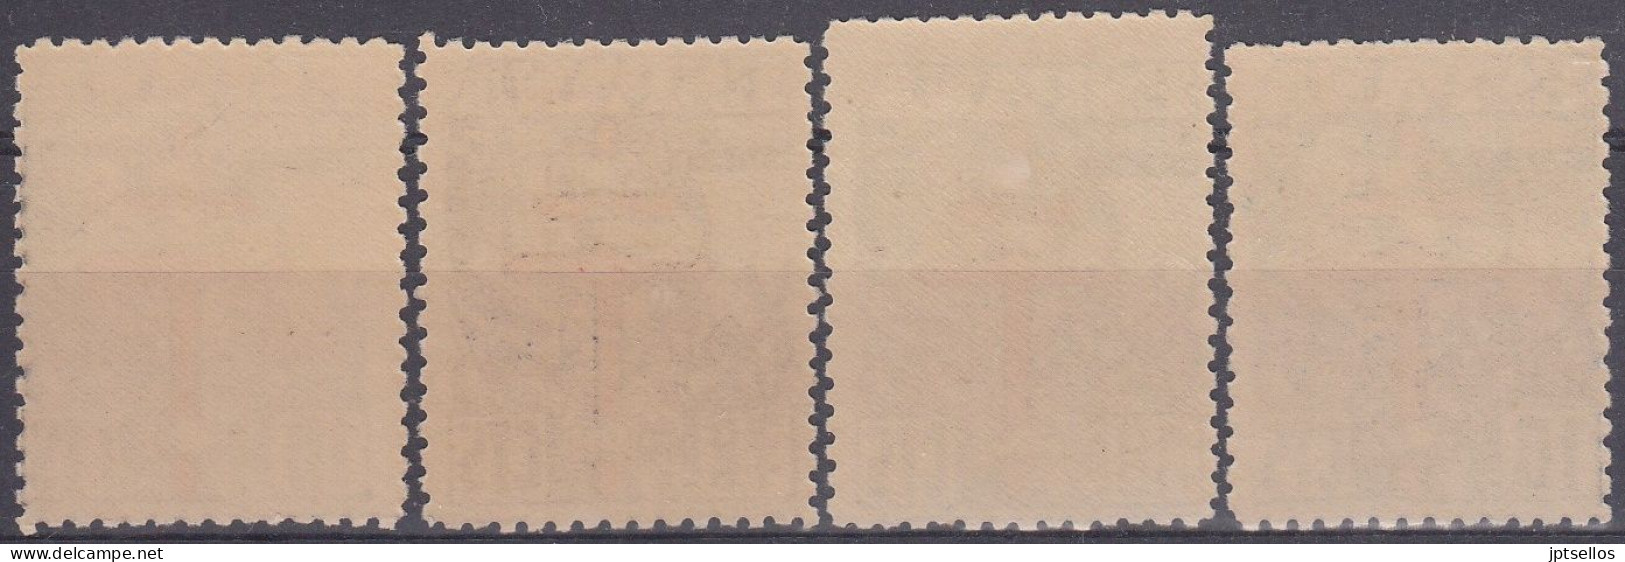 ESPAÑA 1941 Nº 948/951 NUEVO SIN FIJASELLOS - Unused Stamps